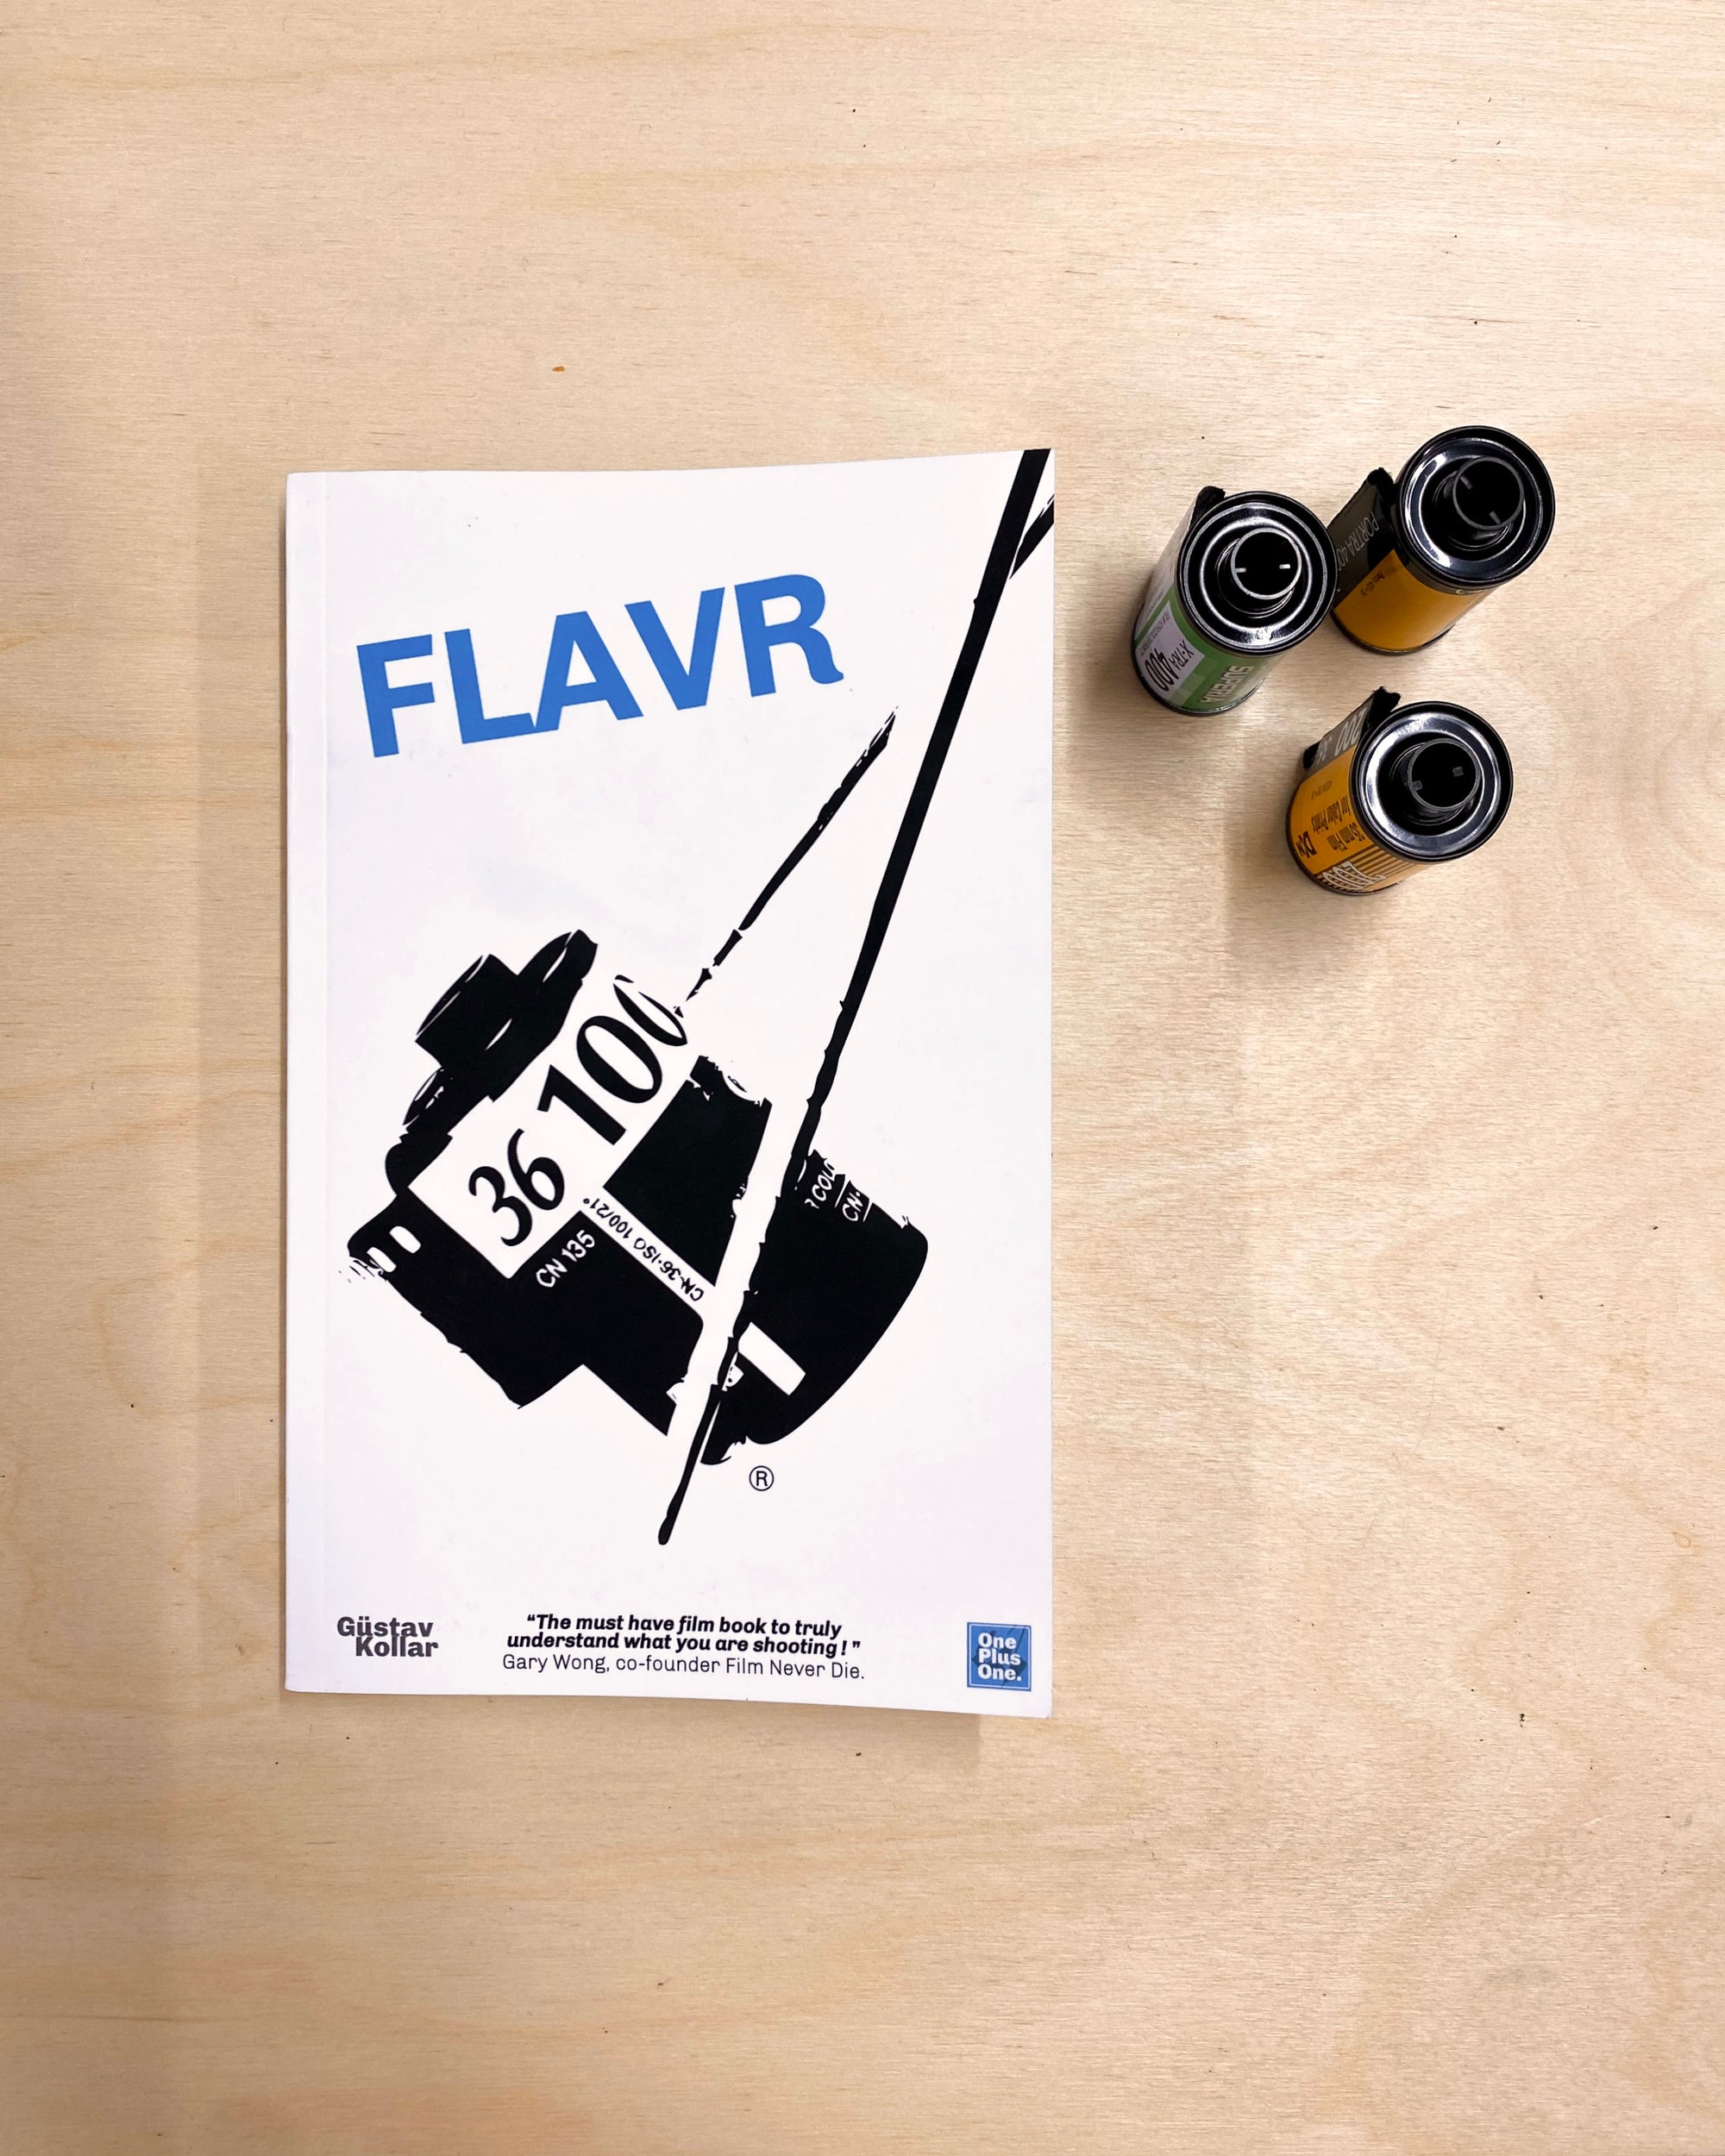 FLAVR - Un guide de référence visuel pour les amoureux de l'analogique